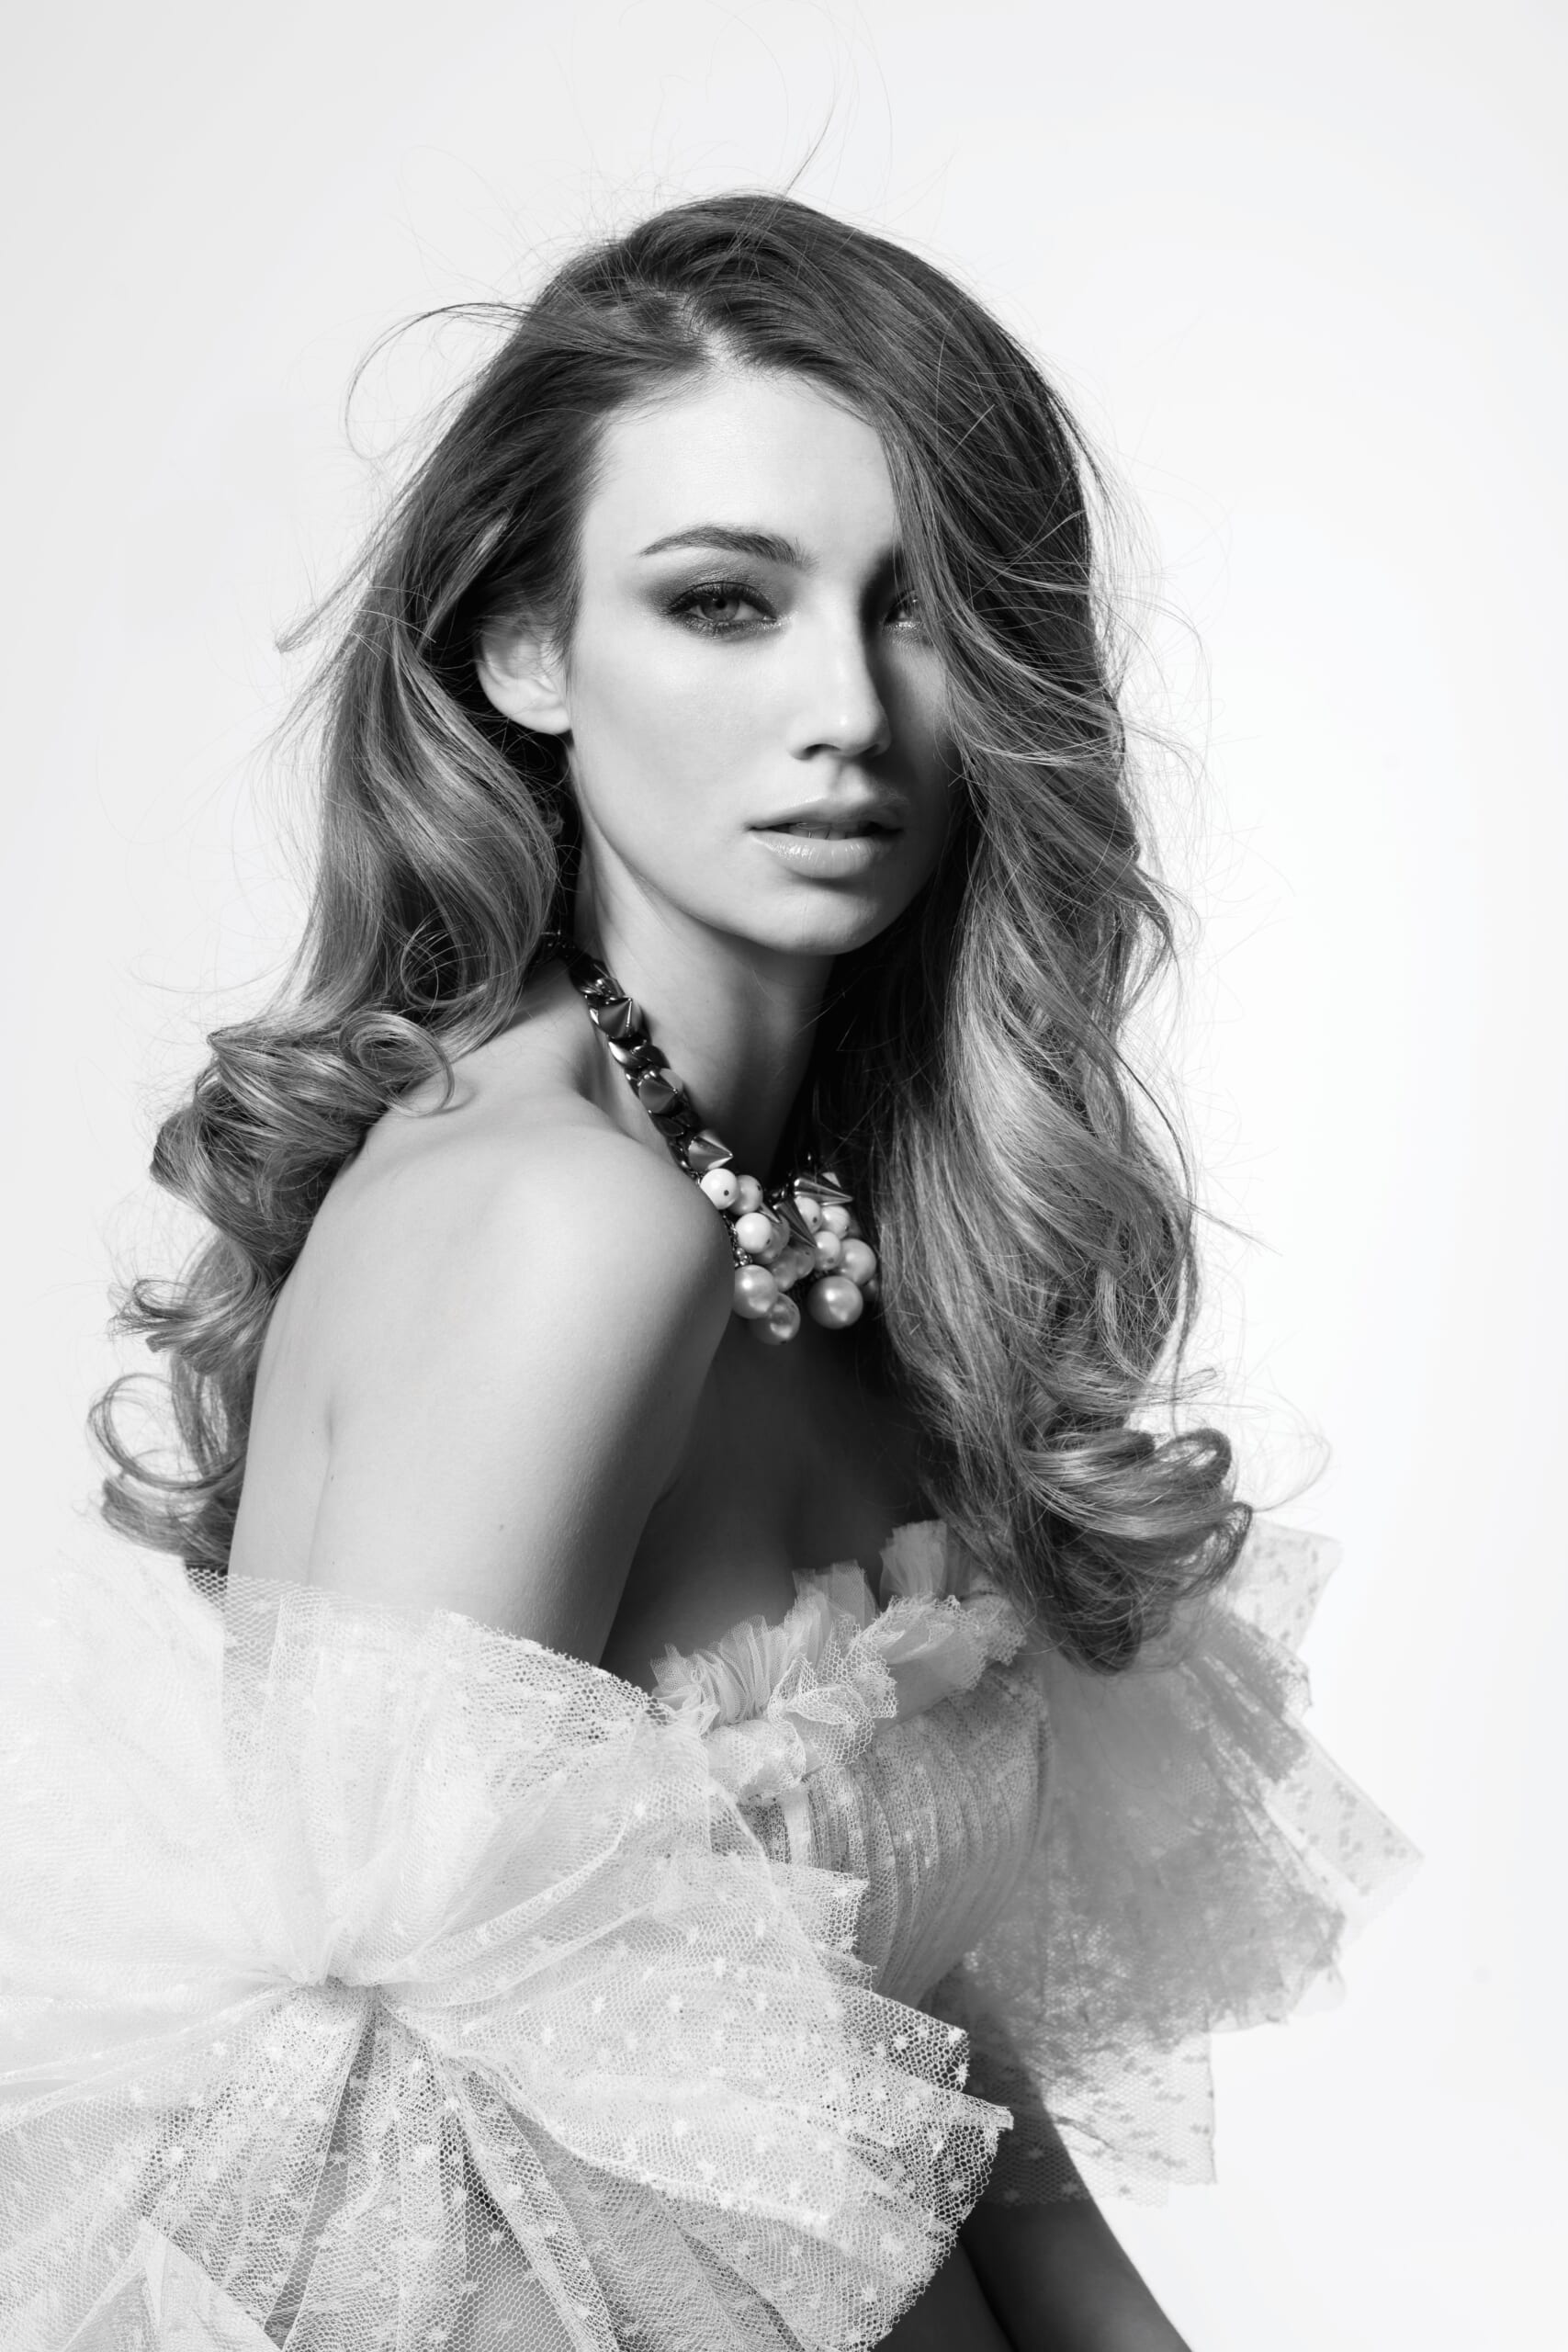 Lorena Rae is Maxim's May/June Cover Model